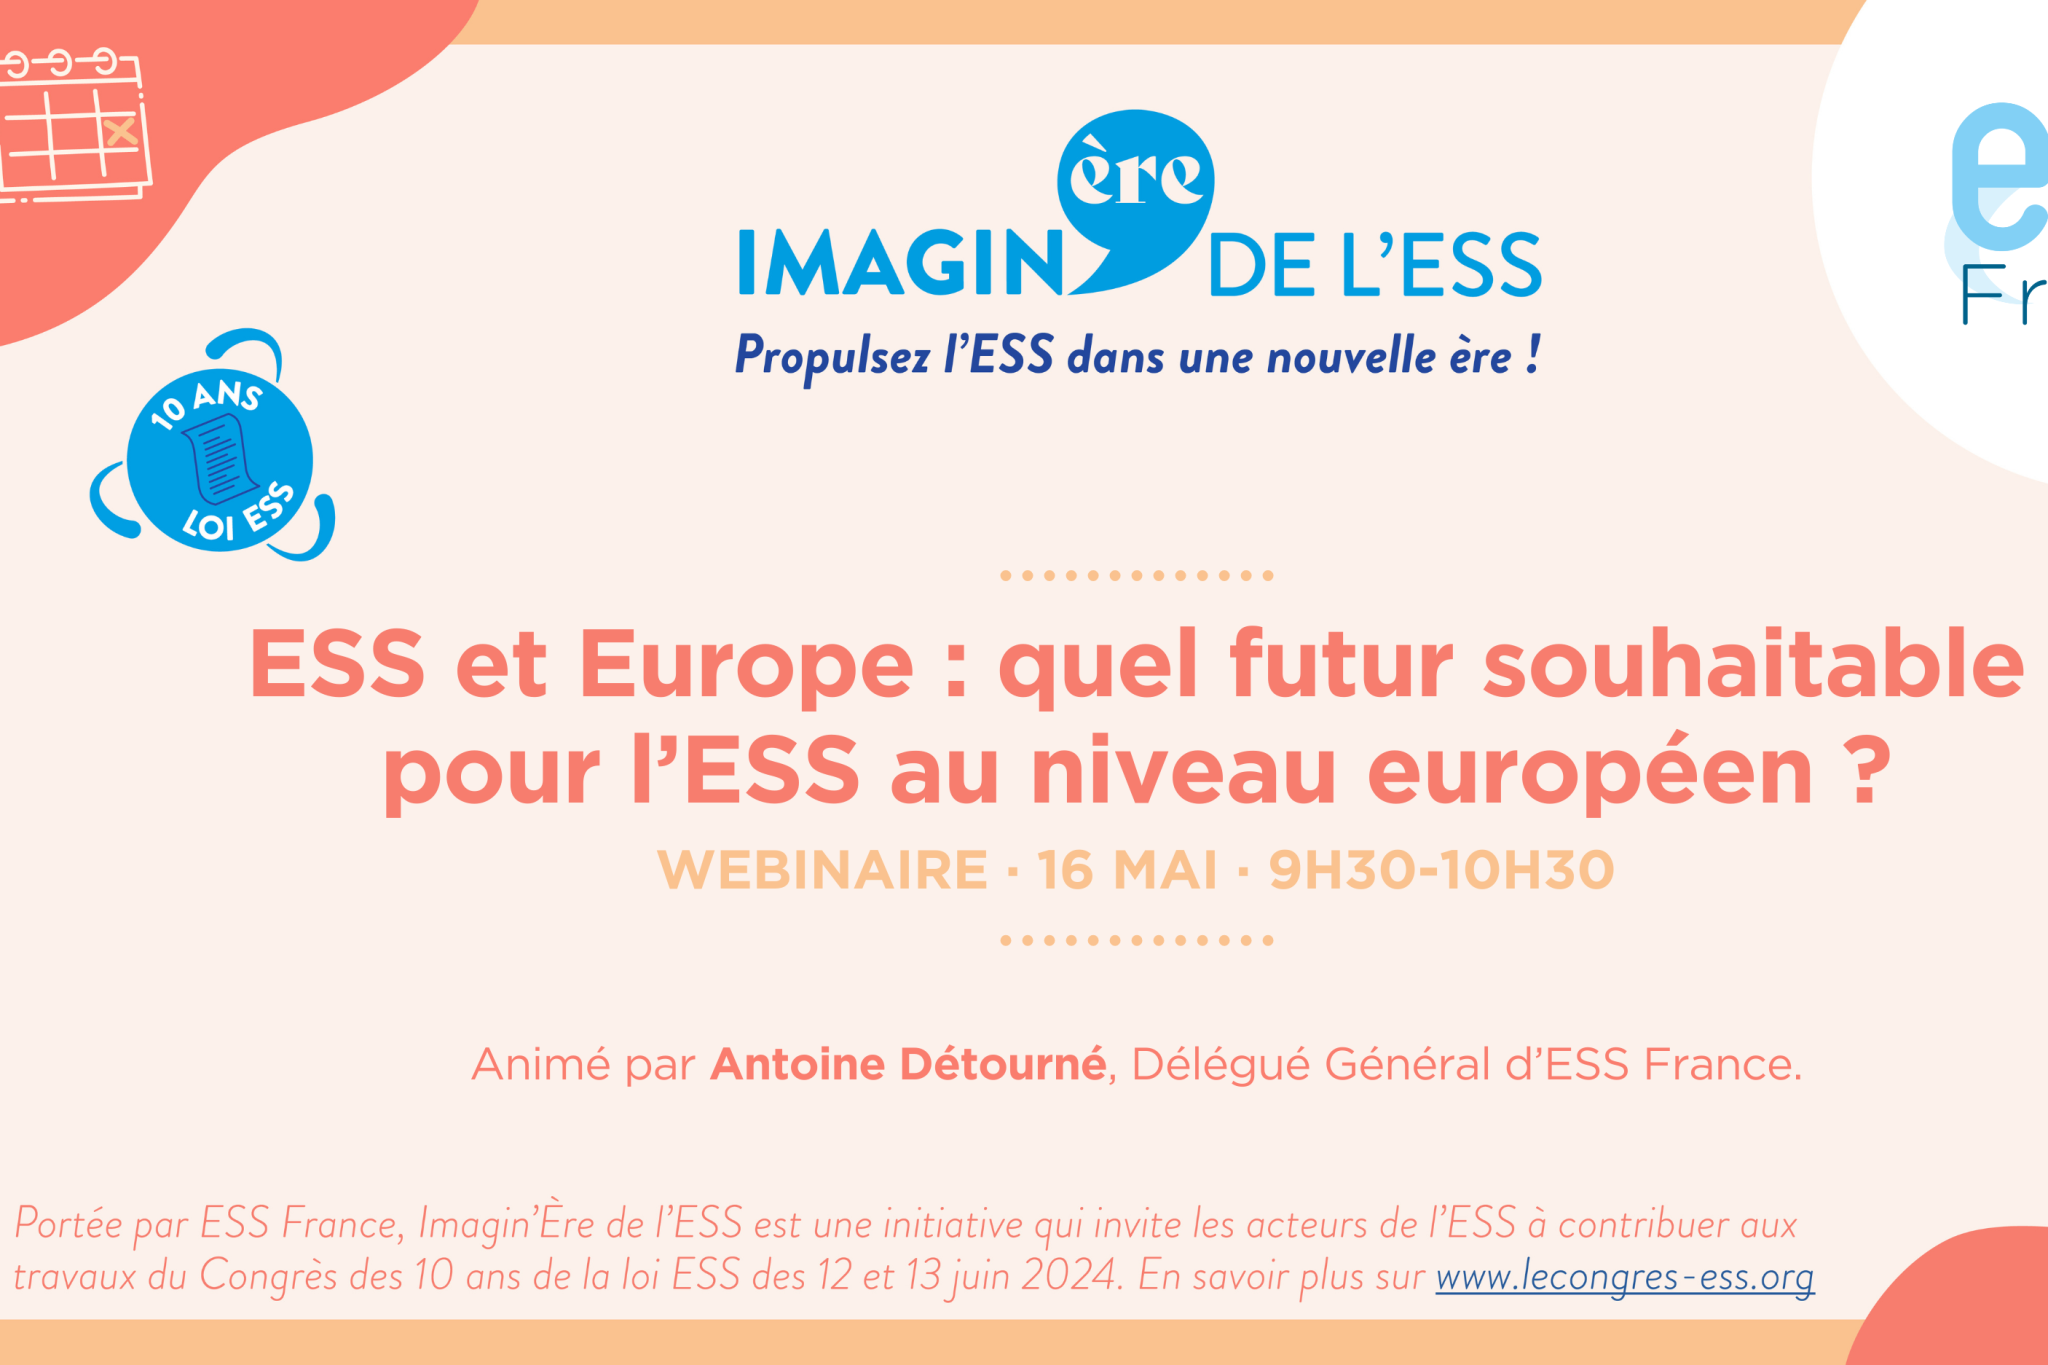 Les webinaires d'ESS France dans le cadre d'Imagin'Ère de l'ESS !